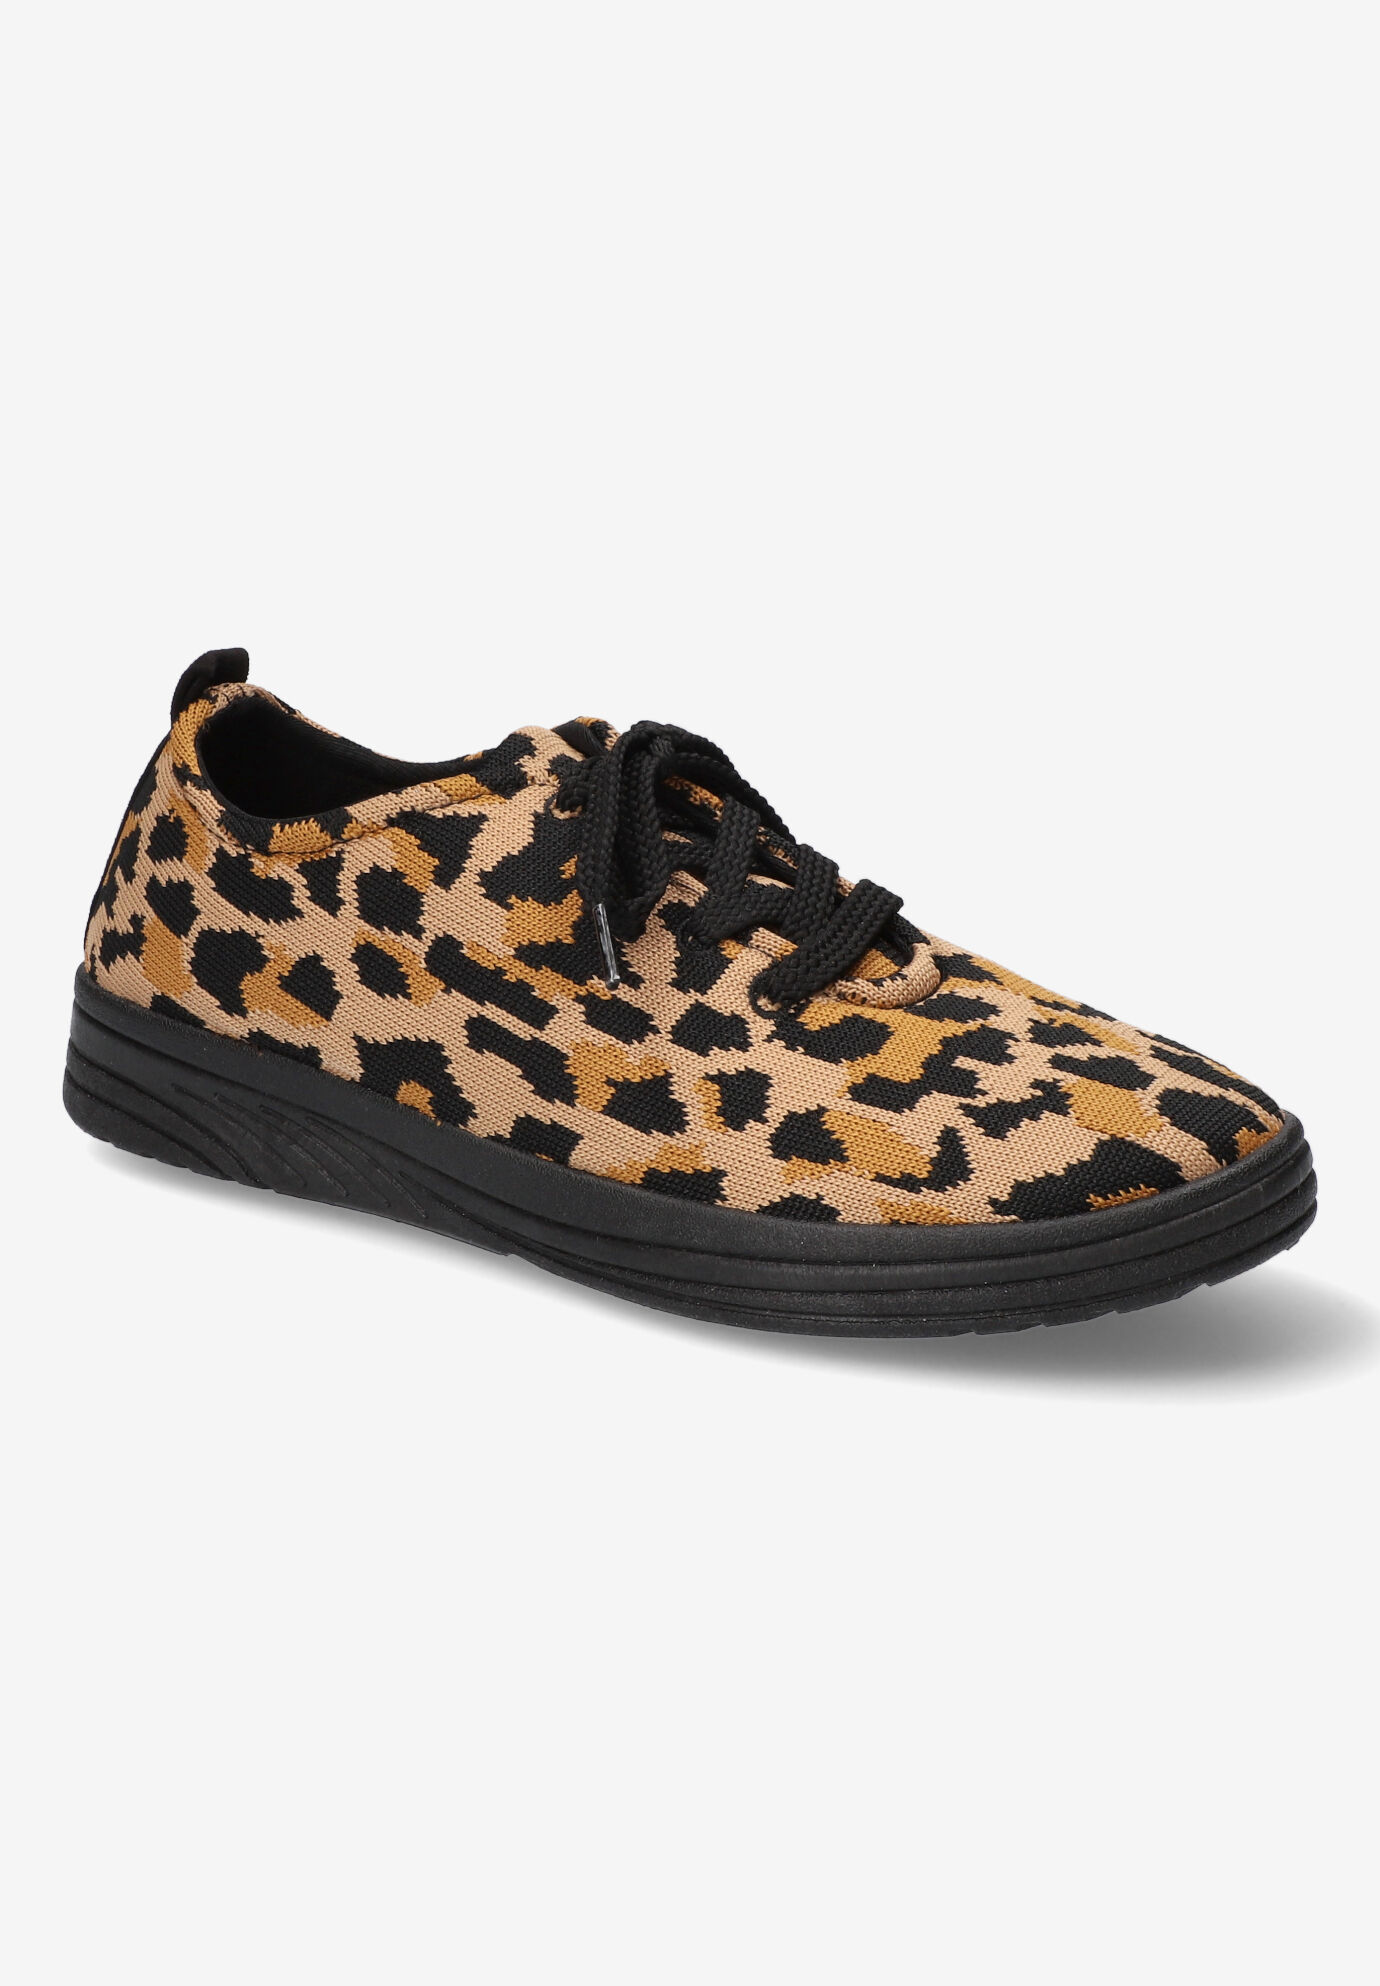 Extra Wide Width Women's Command Sneakers by Easy Street in Leopard Knit (Size 8 WW)